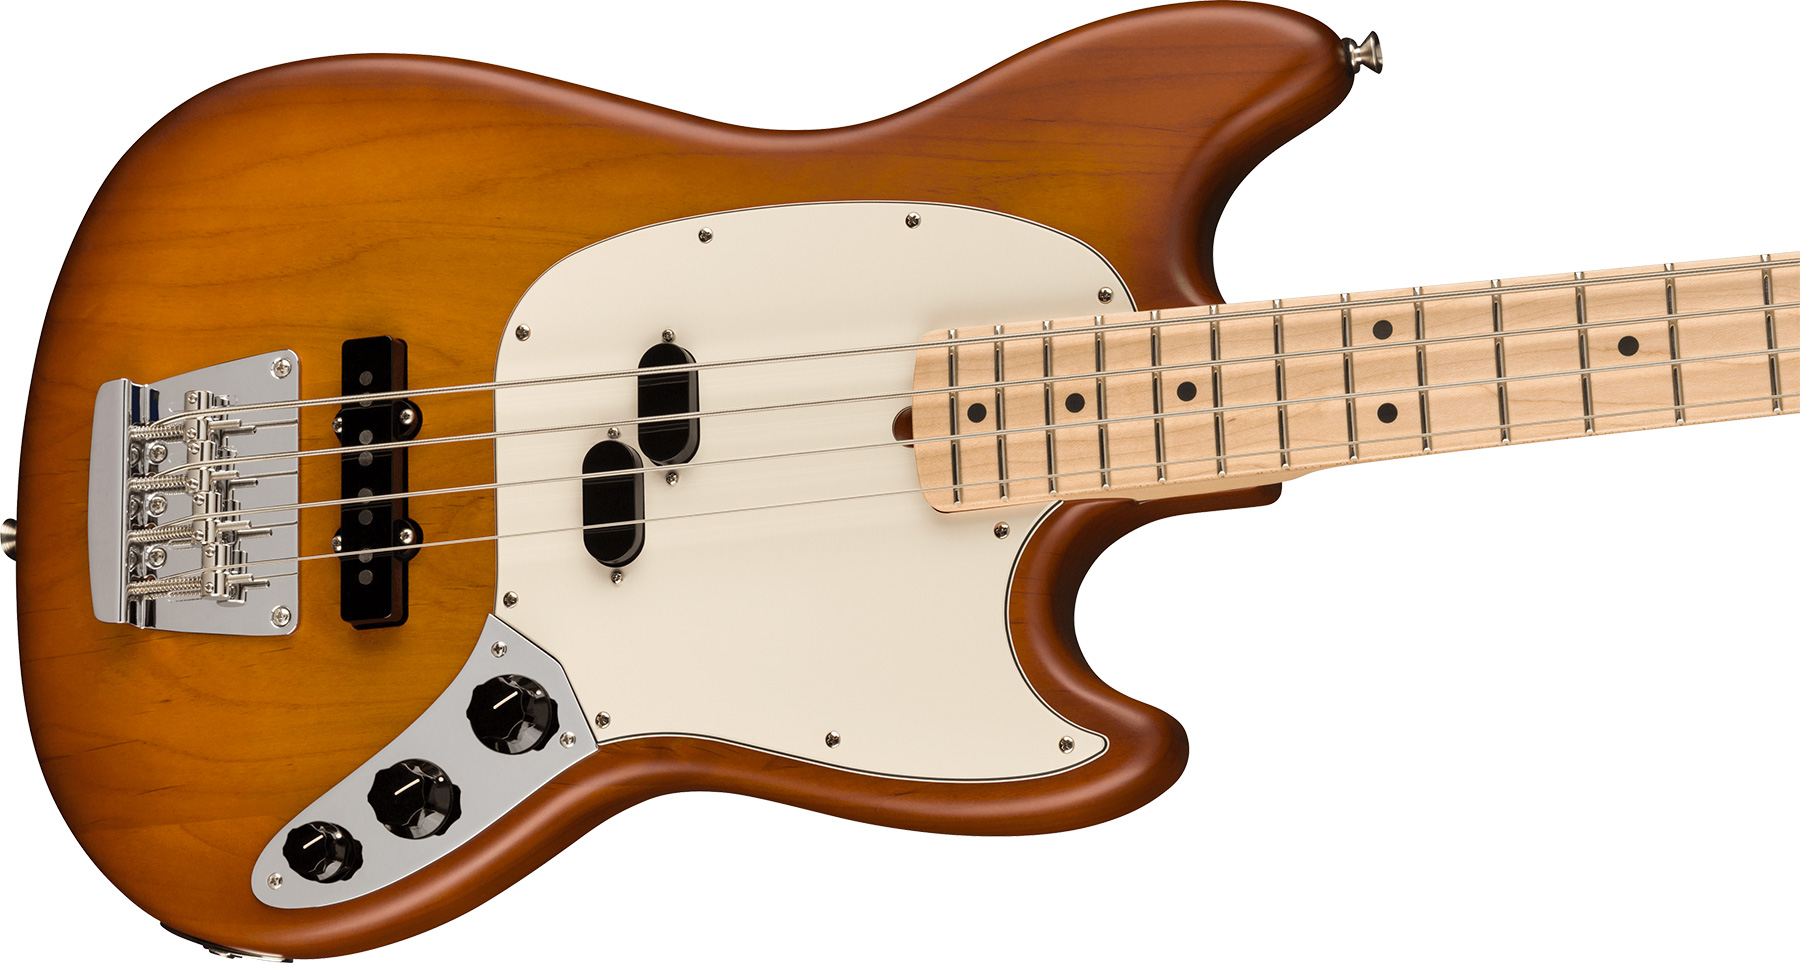 Fender Mustang Bass American Performer Ltd Usa Rw - Honey Burst Satin - Solid body elektrische bas - Variation 2